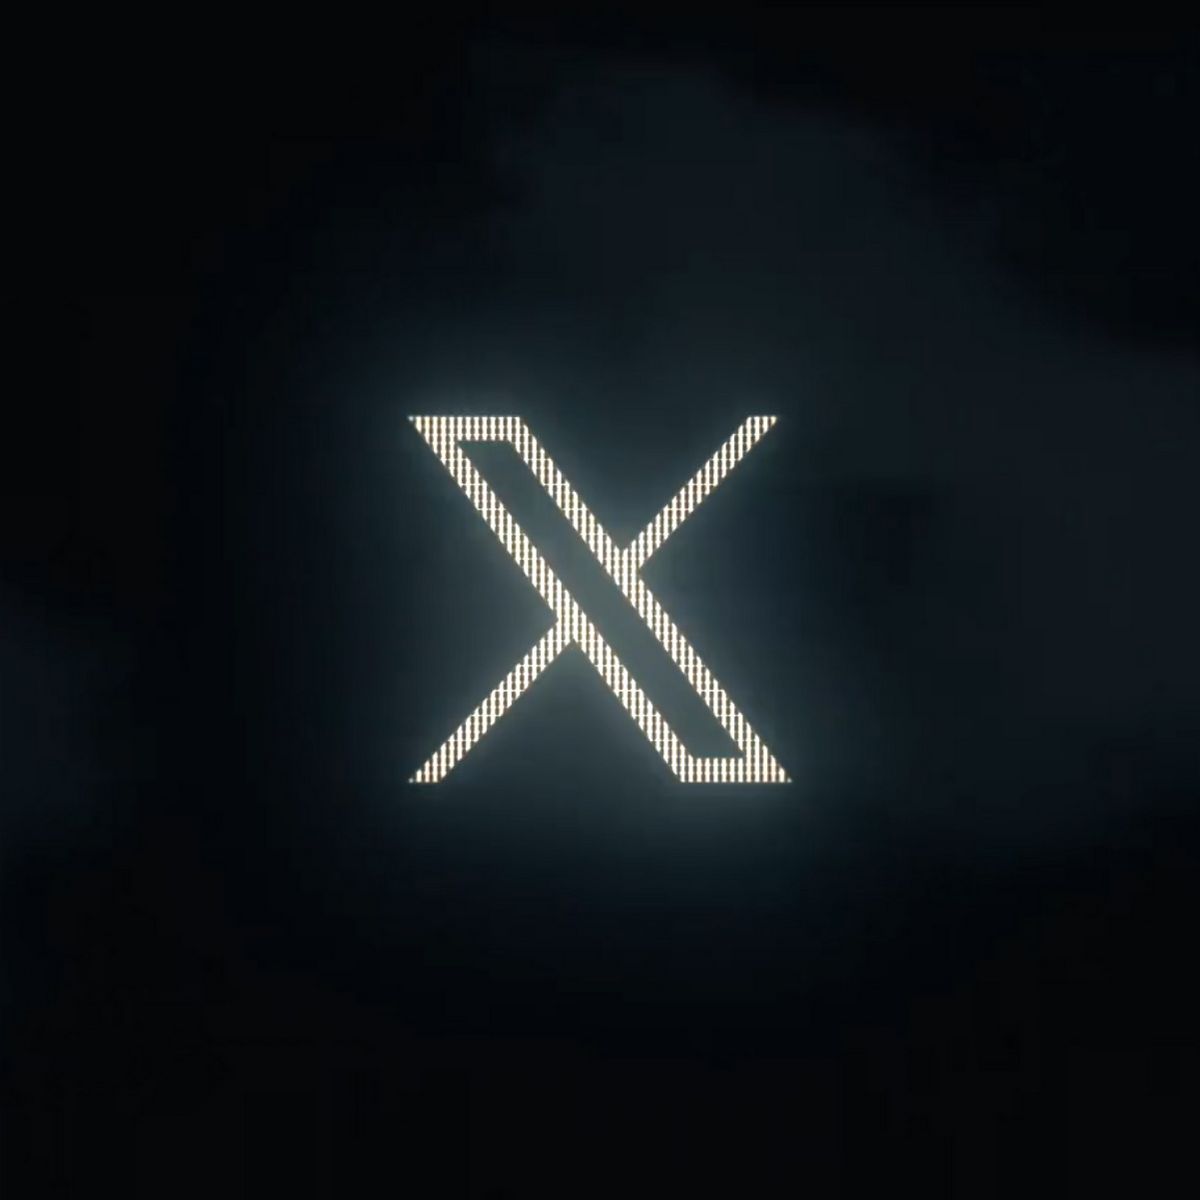 En outre, Musk a fait allusion à plusieurs modifications mineures de la plateforme, accompagnées d’une vidéo captivante présentant une version stylisée de la lettre « X ».